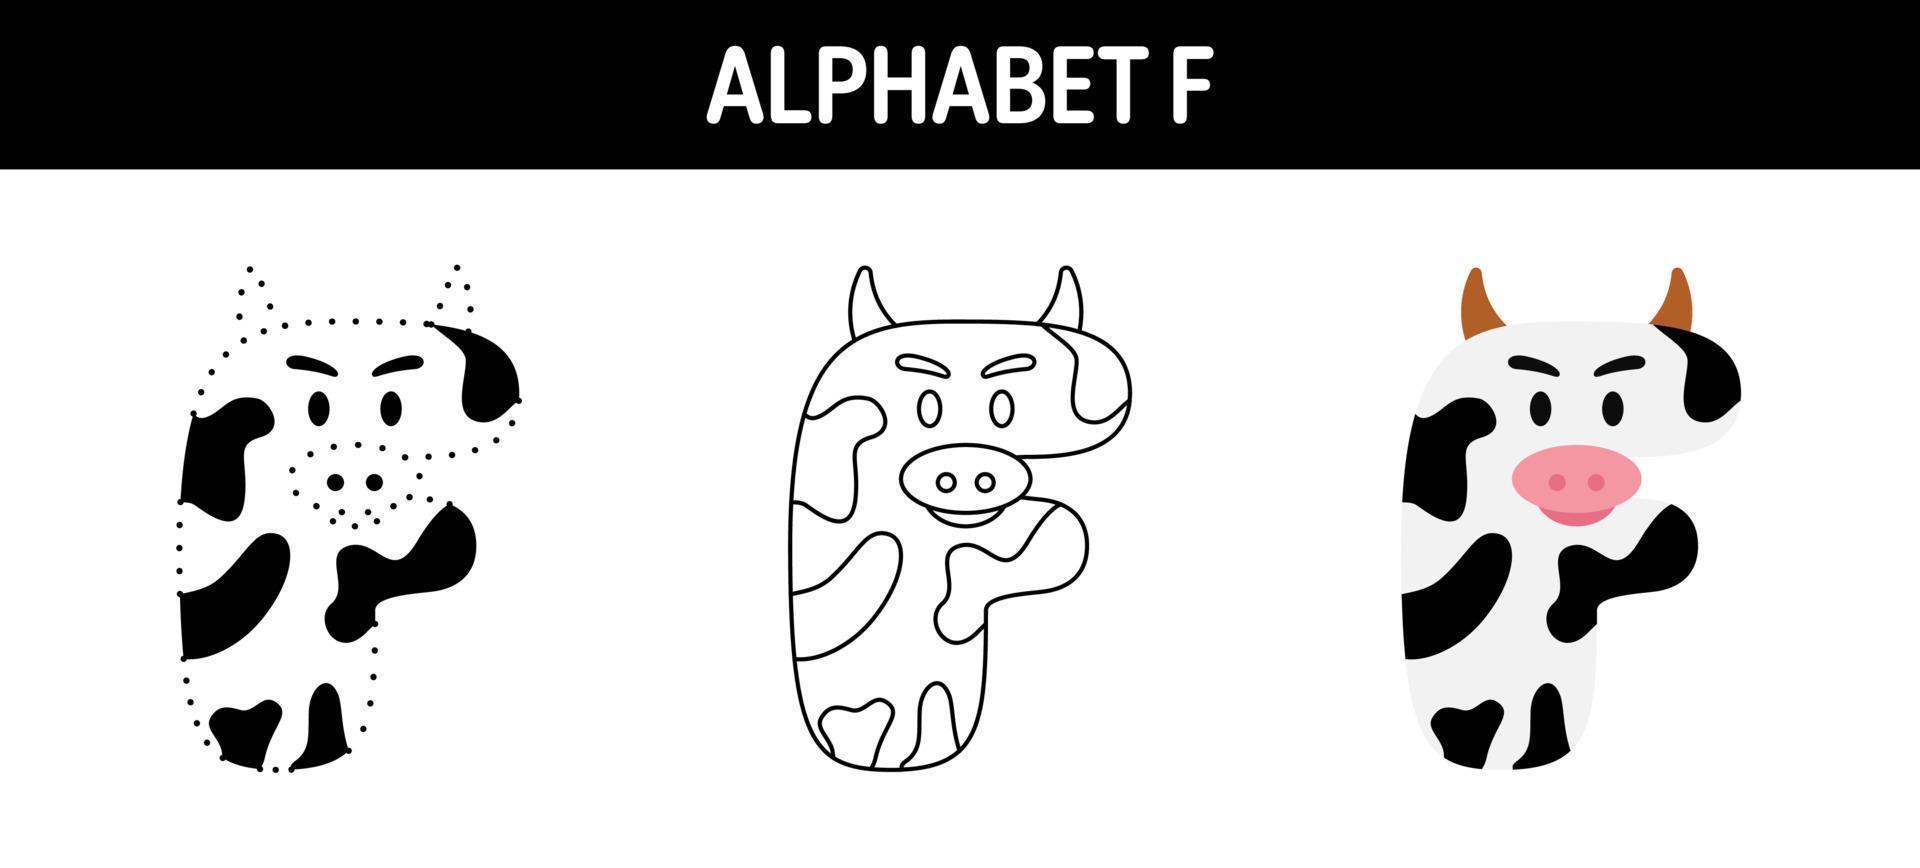 alfabeto f planilha de rastreamento e coloração para crianças vetor